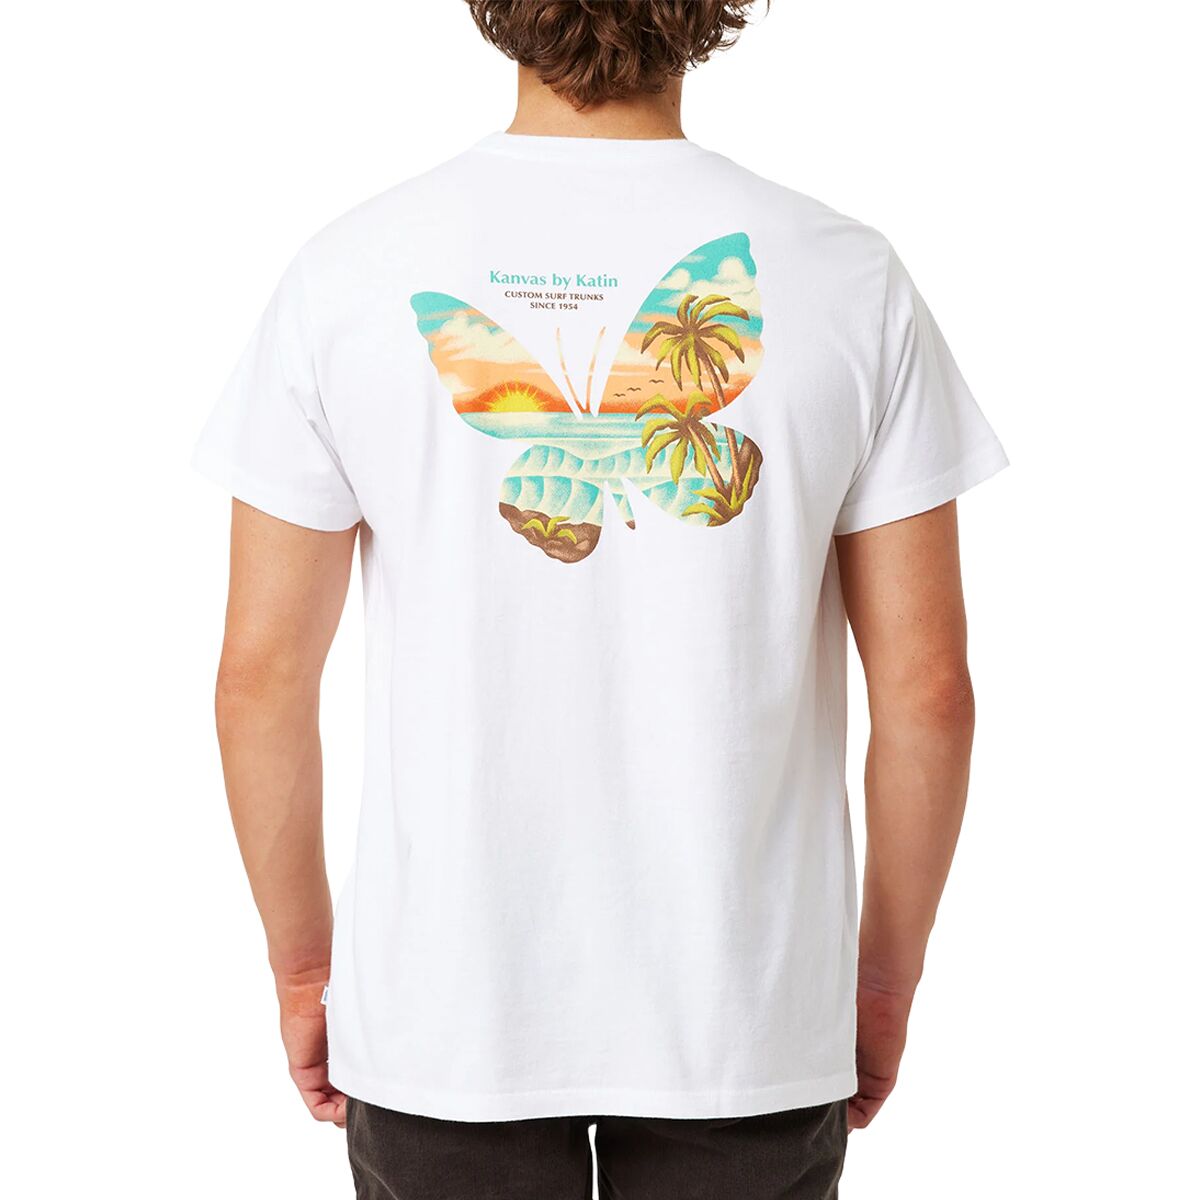 Flutter T-Shirt - Men's by Katin | US-Parks.com